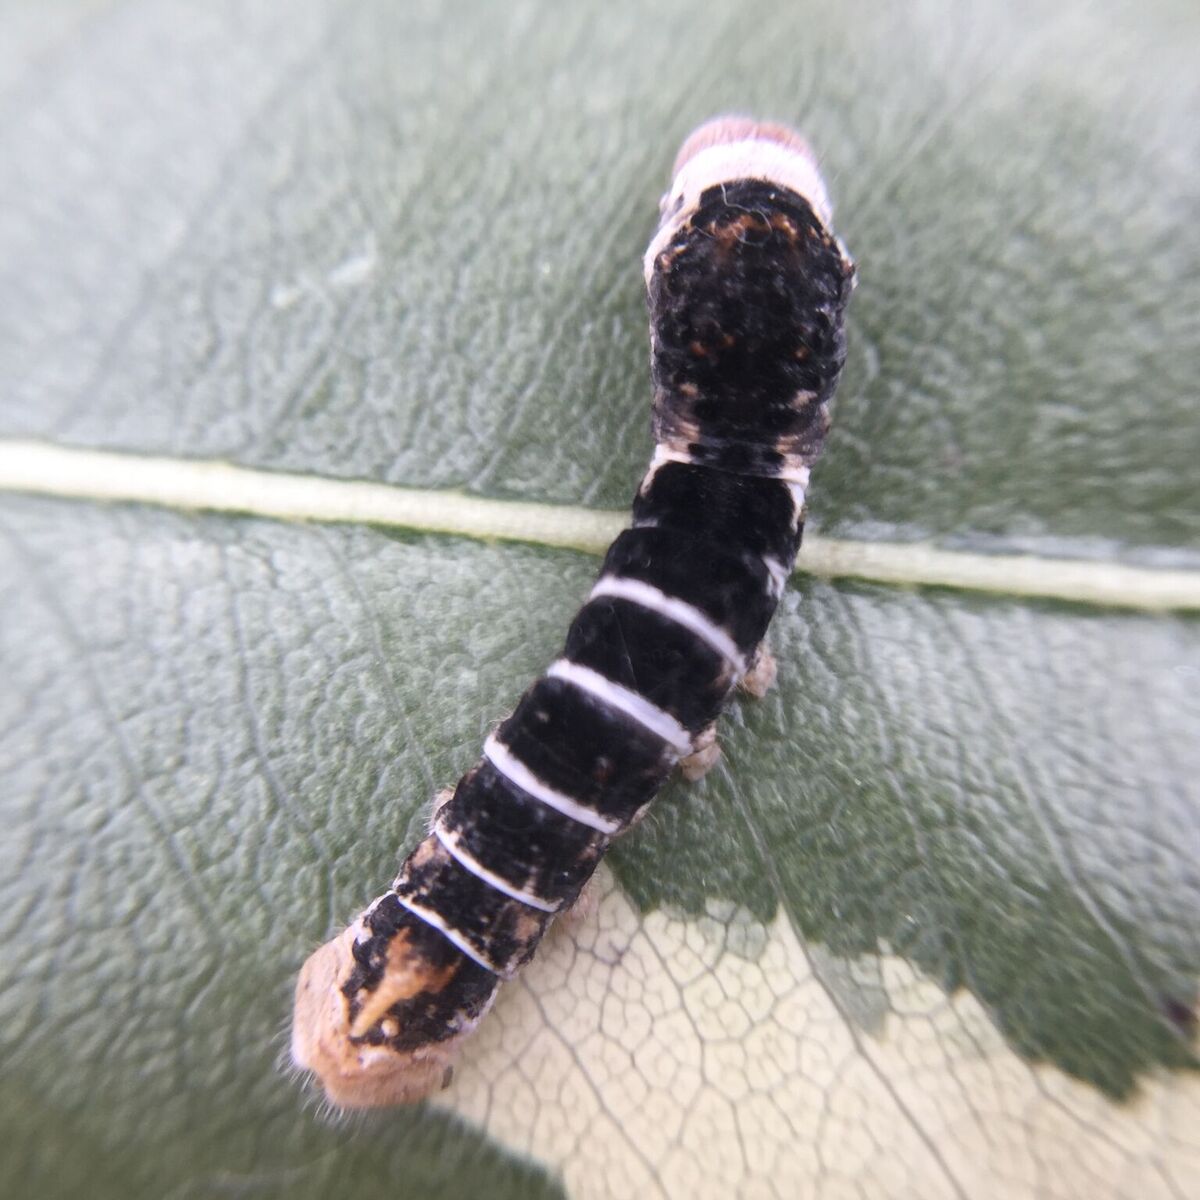 Tiger Silkworm on a leaf